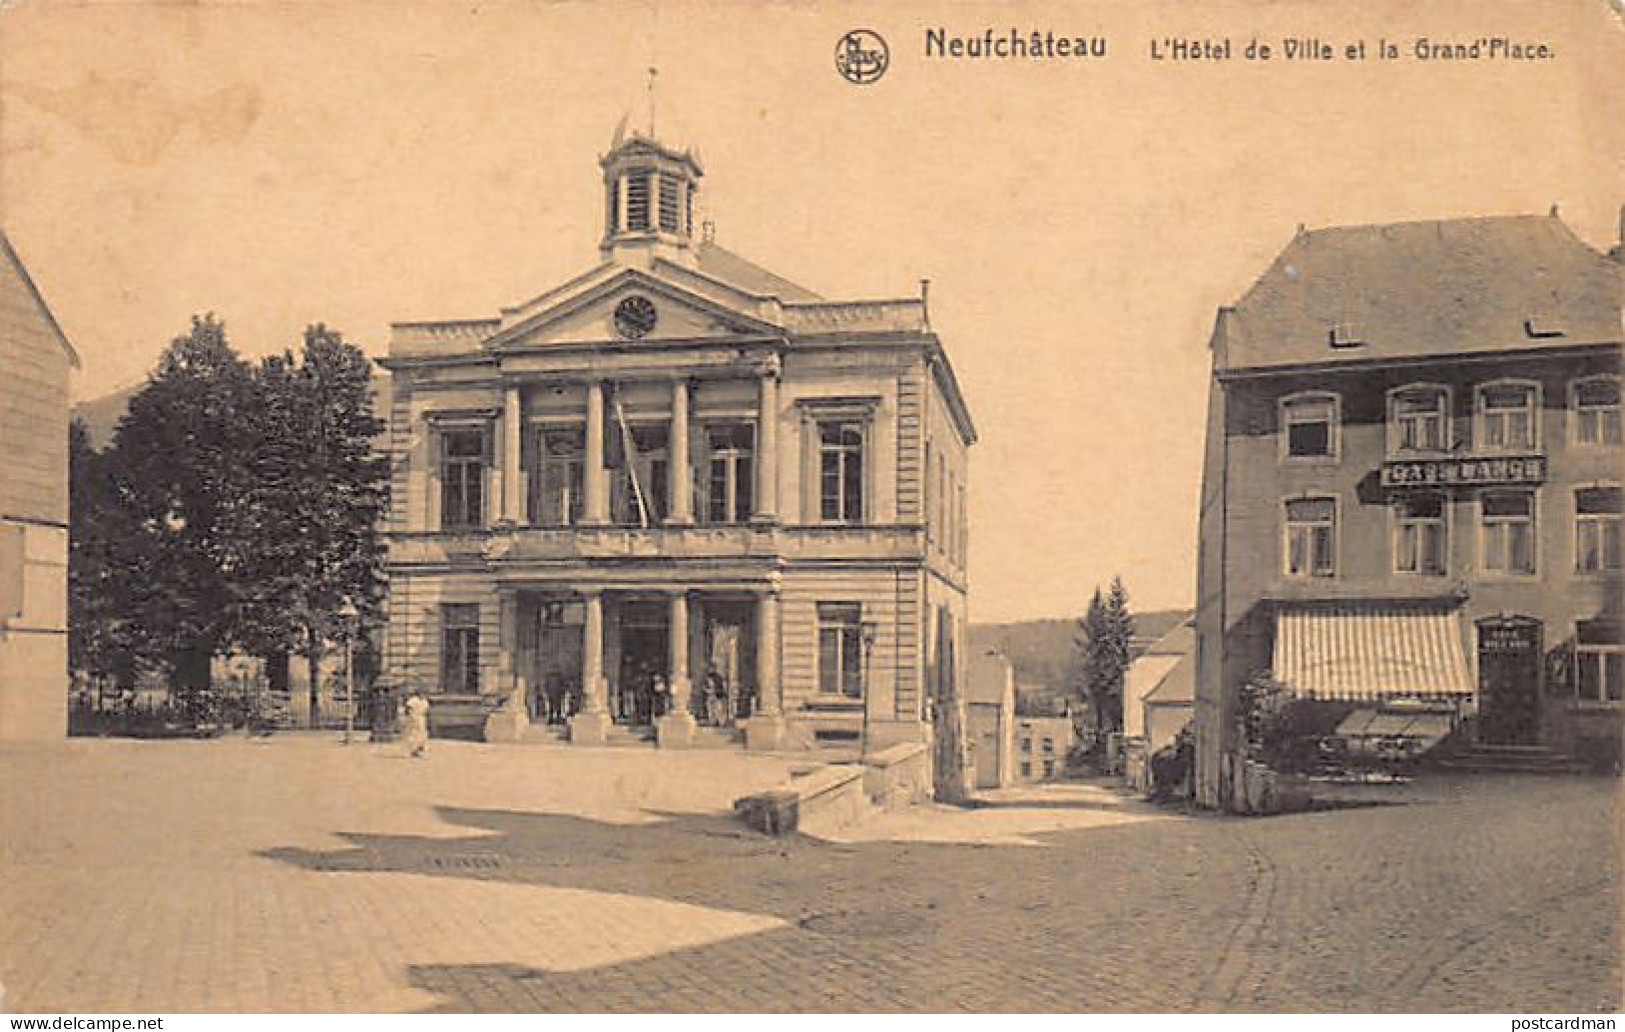 NEUFCHÂTEAU (Prov. Lux.) L'Hôtel De Ville Et La Grand'Place - Café Lange - Neufchâteau